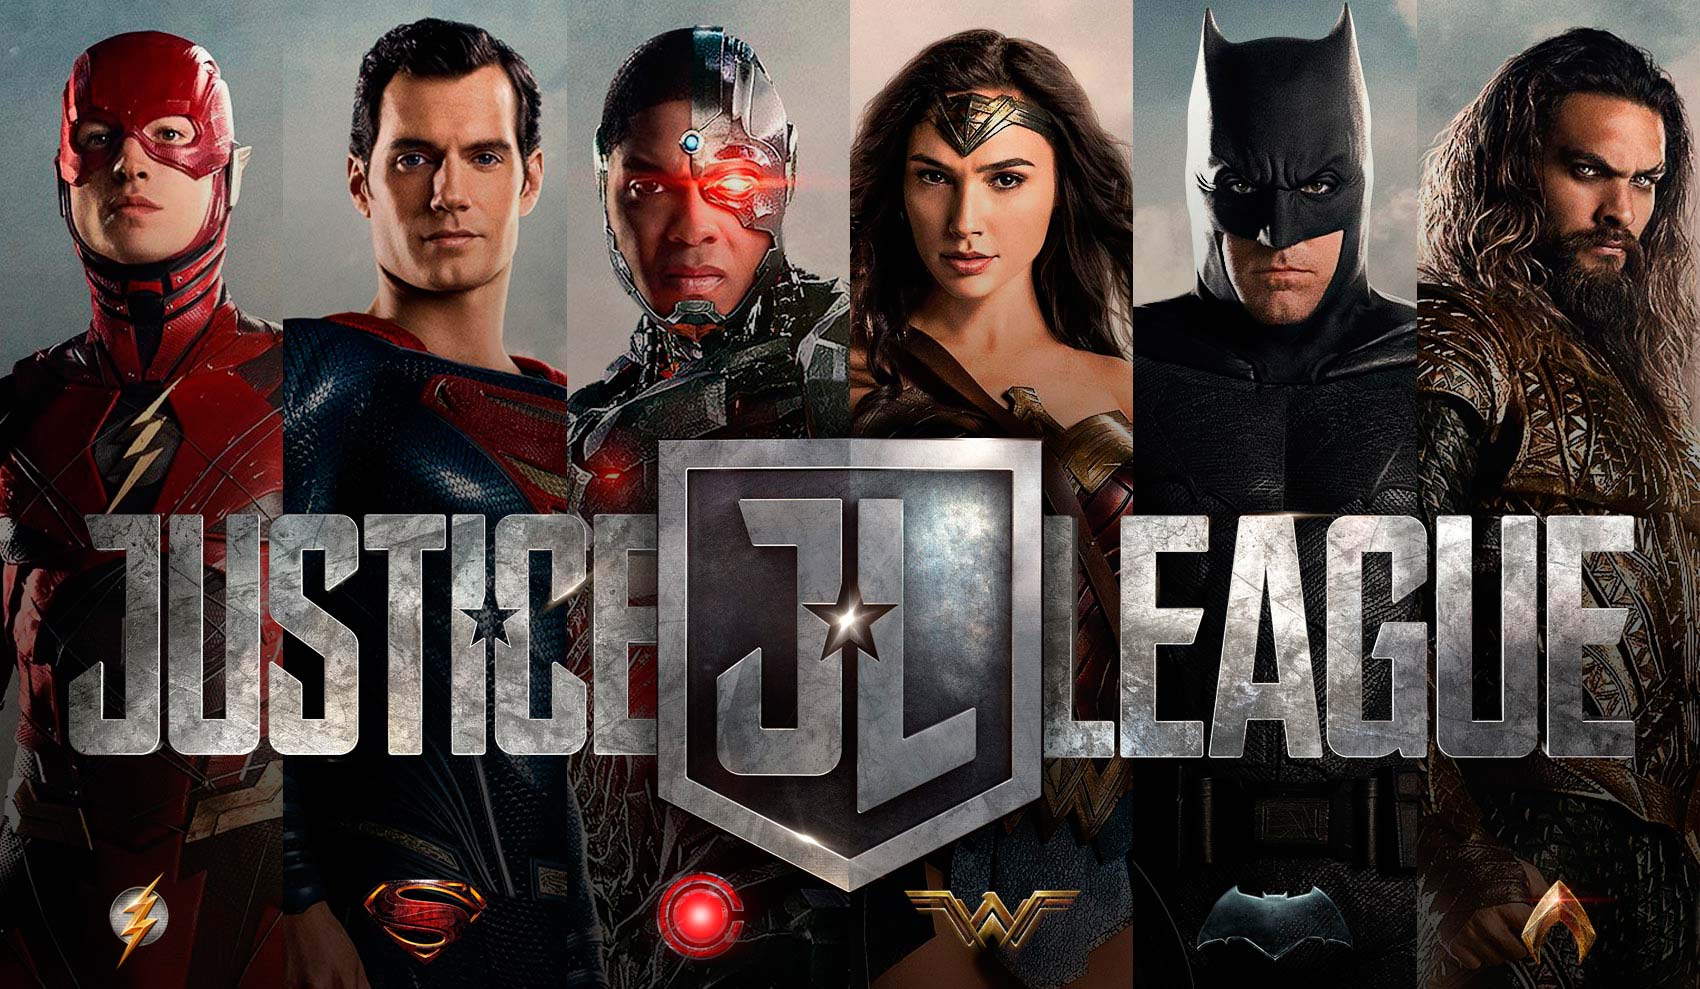  Warner Channel presenta el Especial Justice League